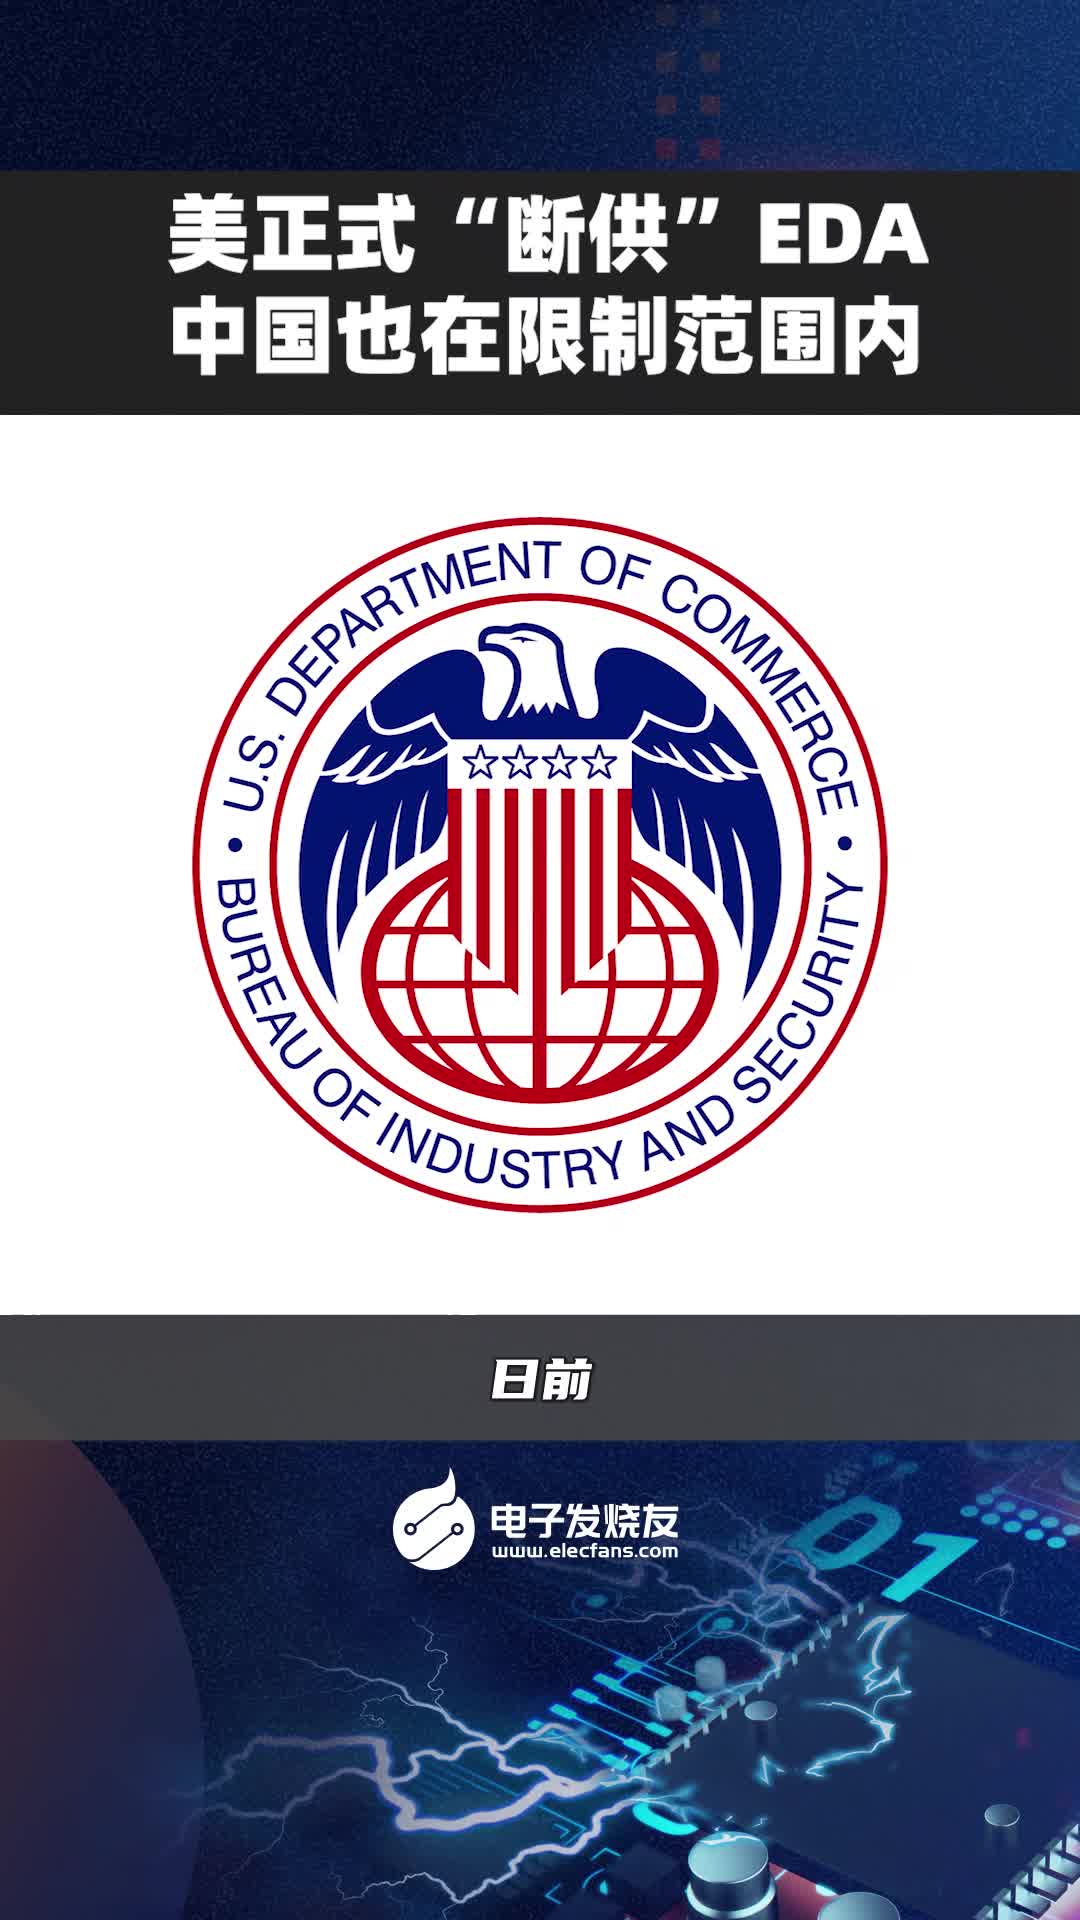 美国正式“断供”EDA，中国也在限制范围内